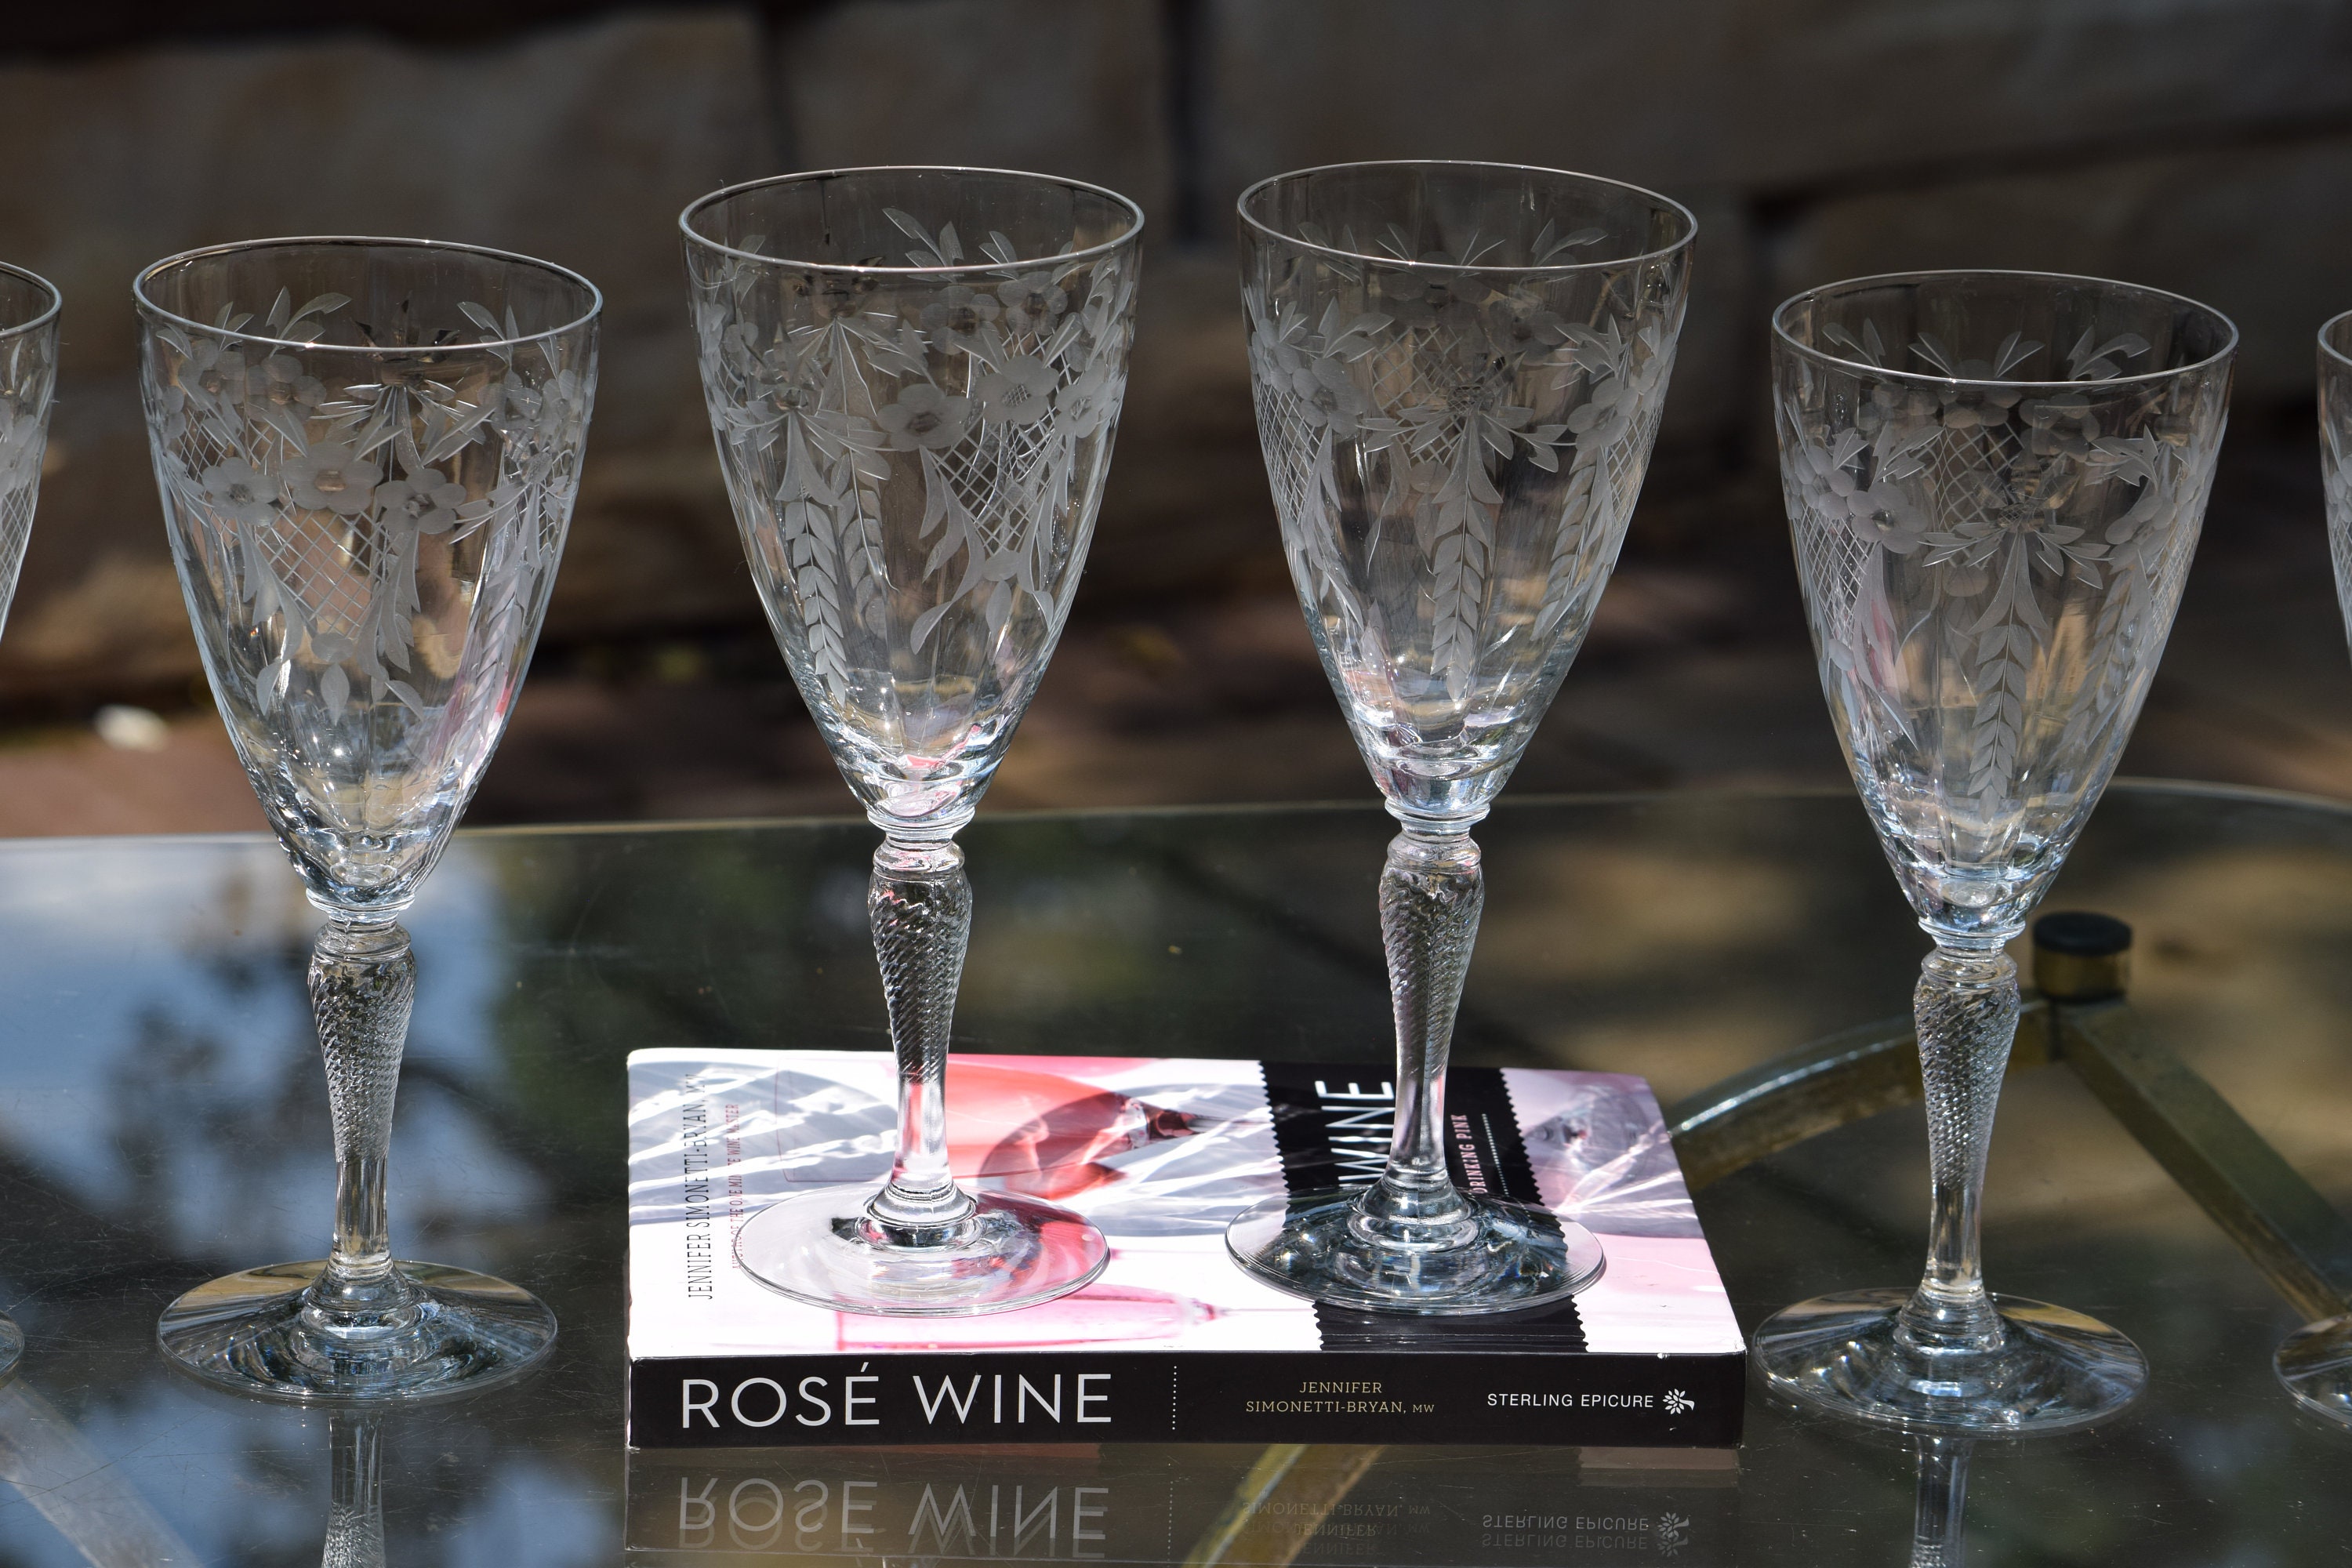 4 Vintage Etched Wine Glasses, 1950's Rock Sharpe After Dinner Drink 5-6 Oz  Liqueur Wine Glasses, Dessert Wine Glasses, White Wine Glasses 